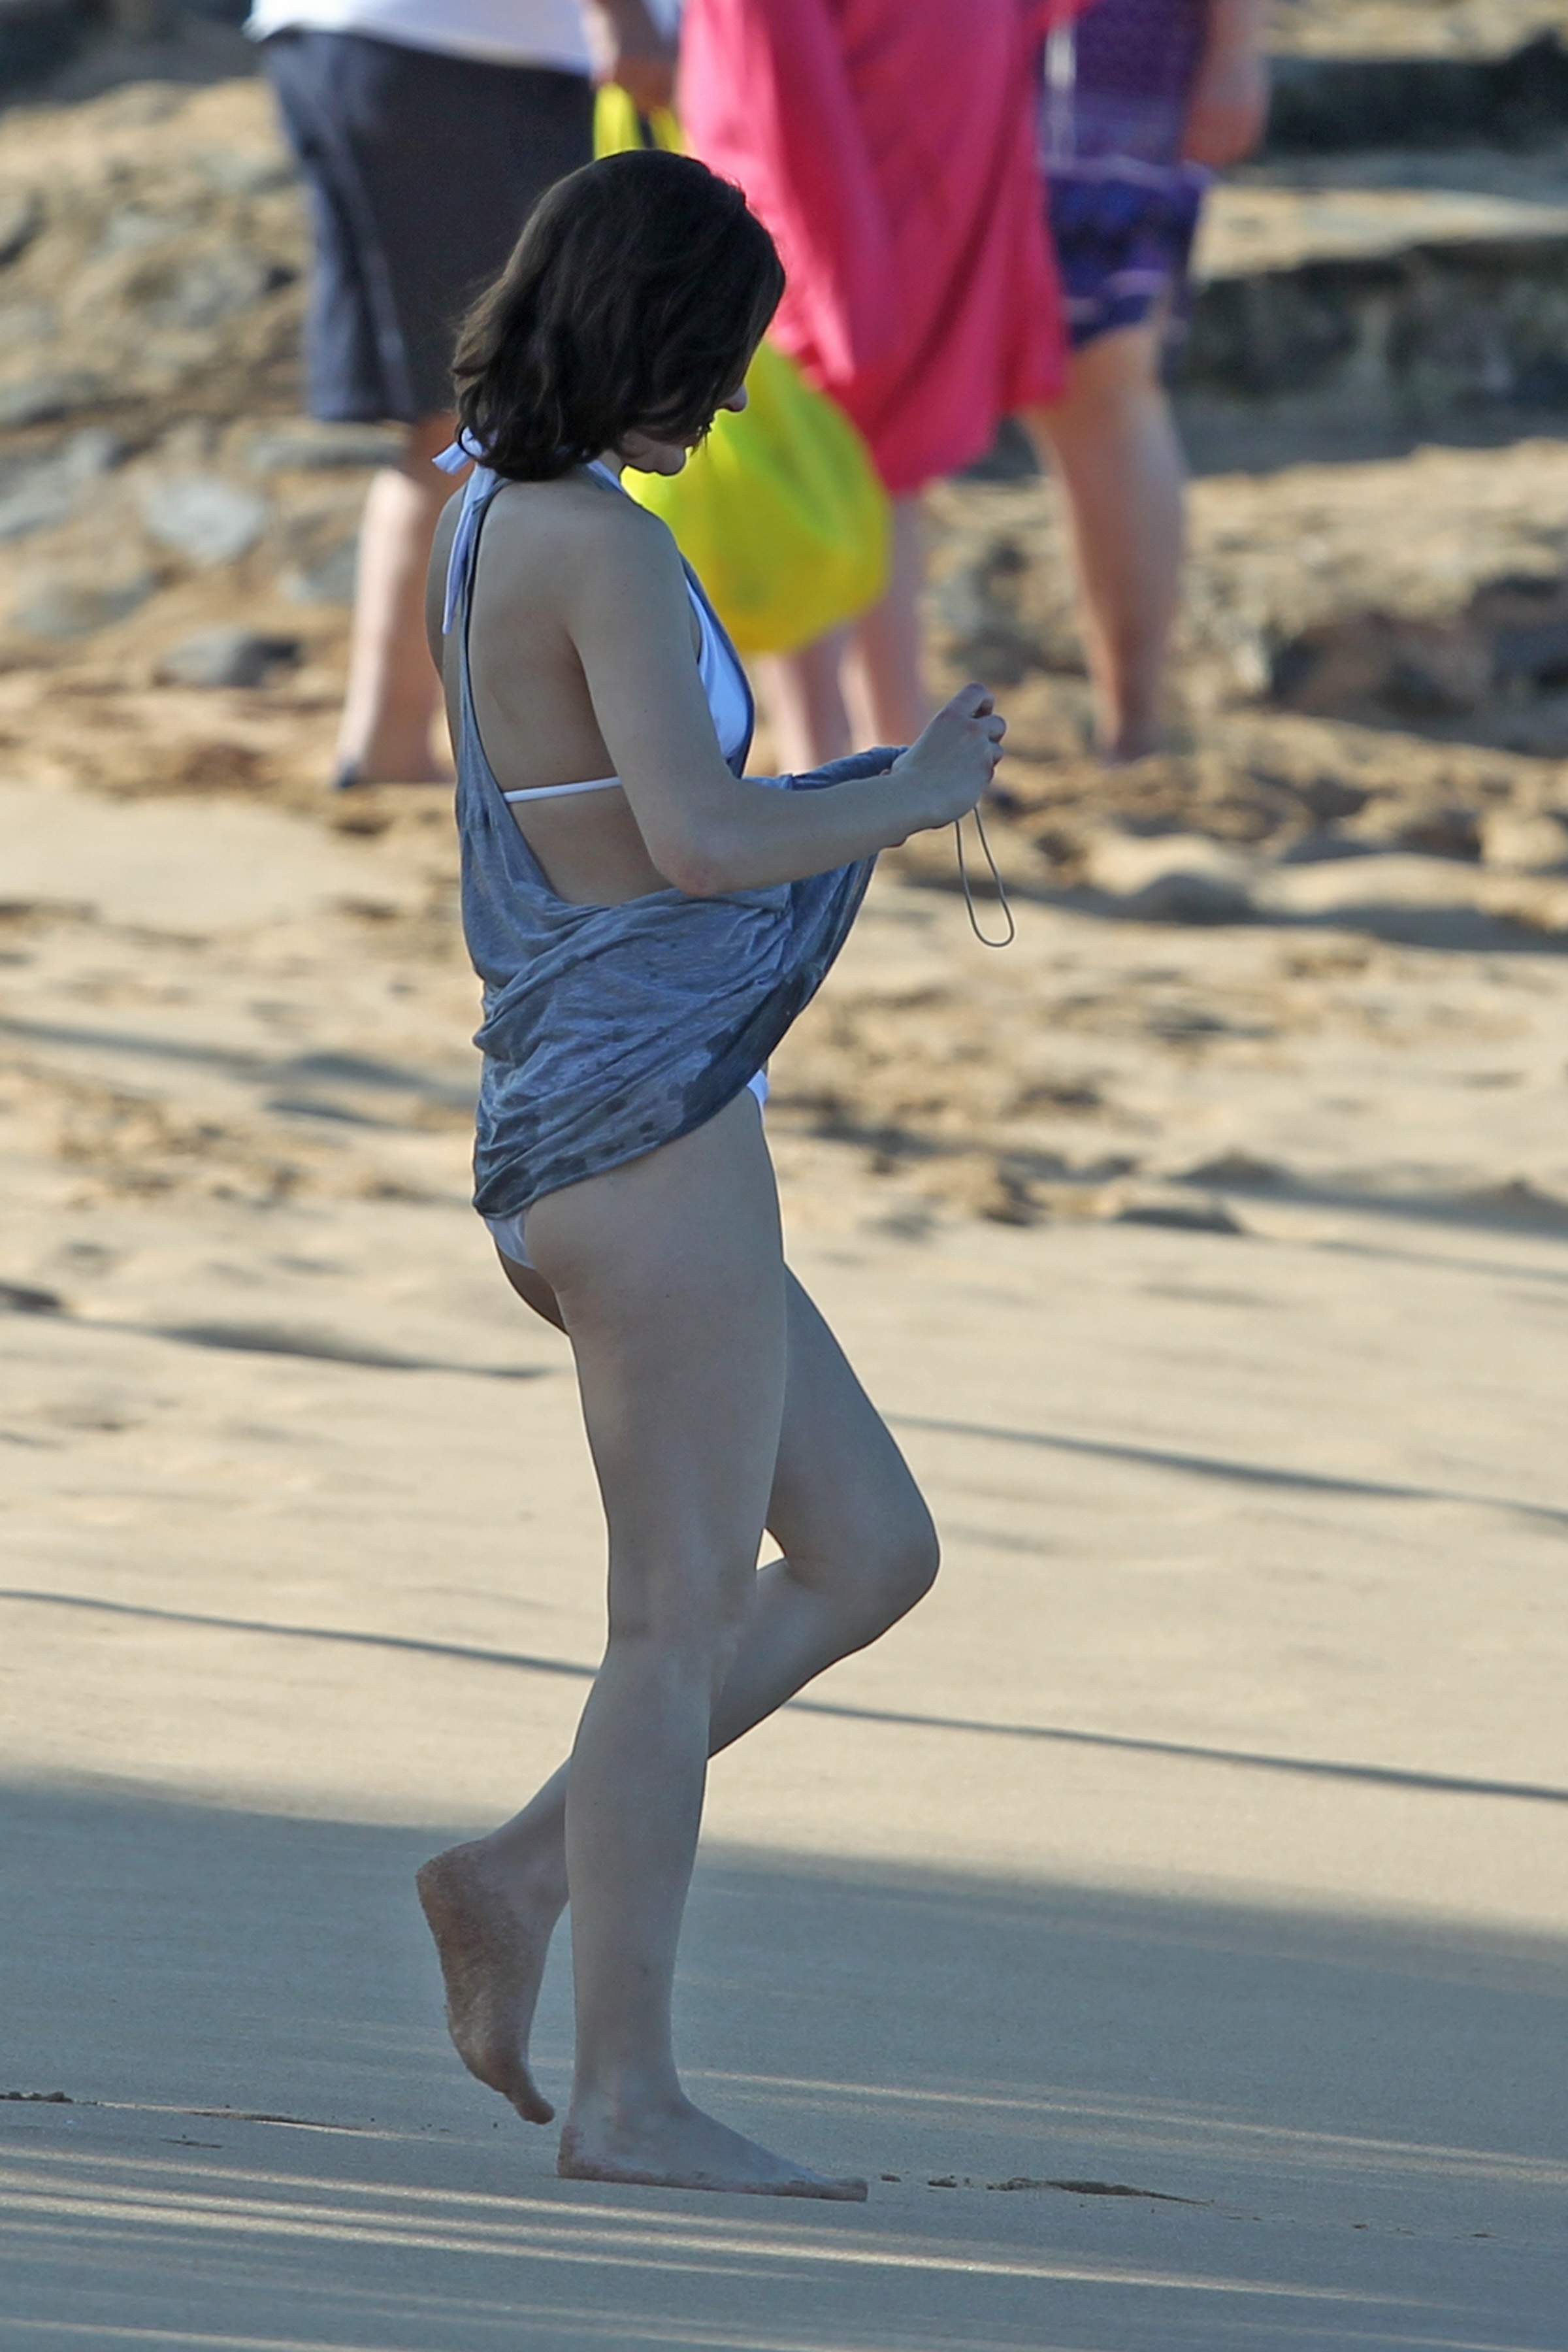 Milla Jovovich on the beach in a bikini on New Years Eve in Maui, Hawaii De...